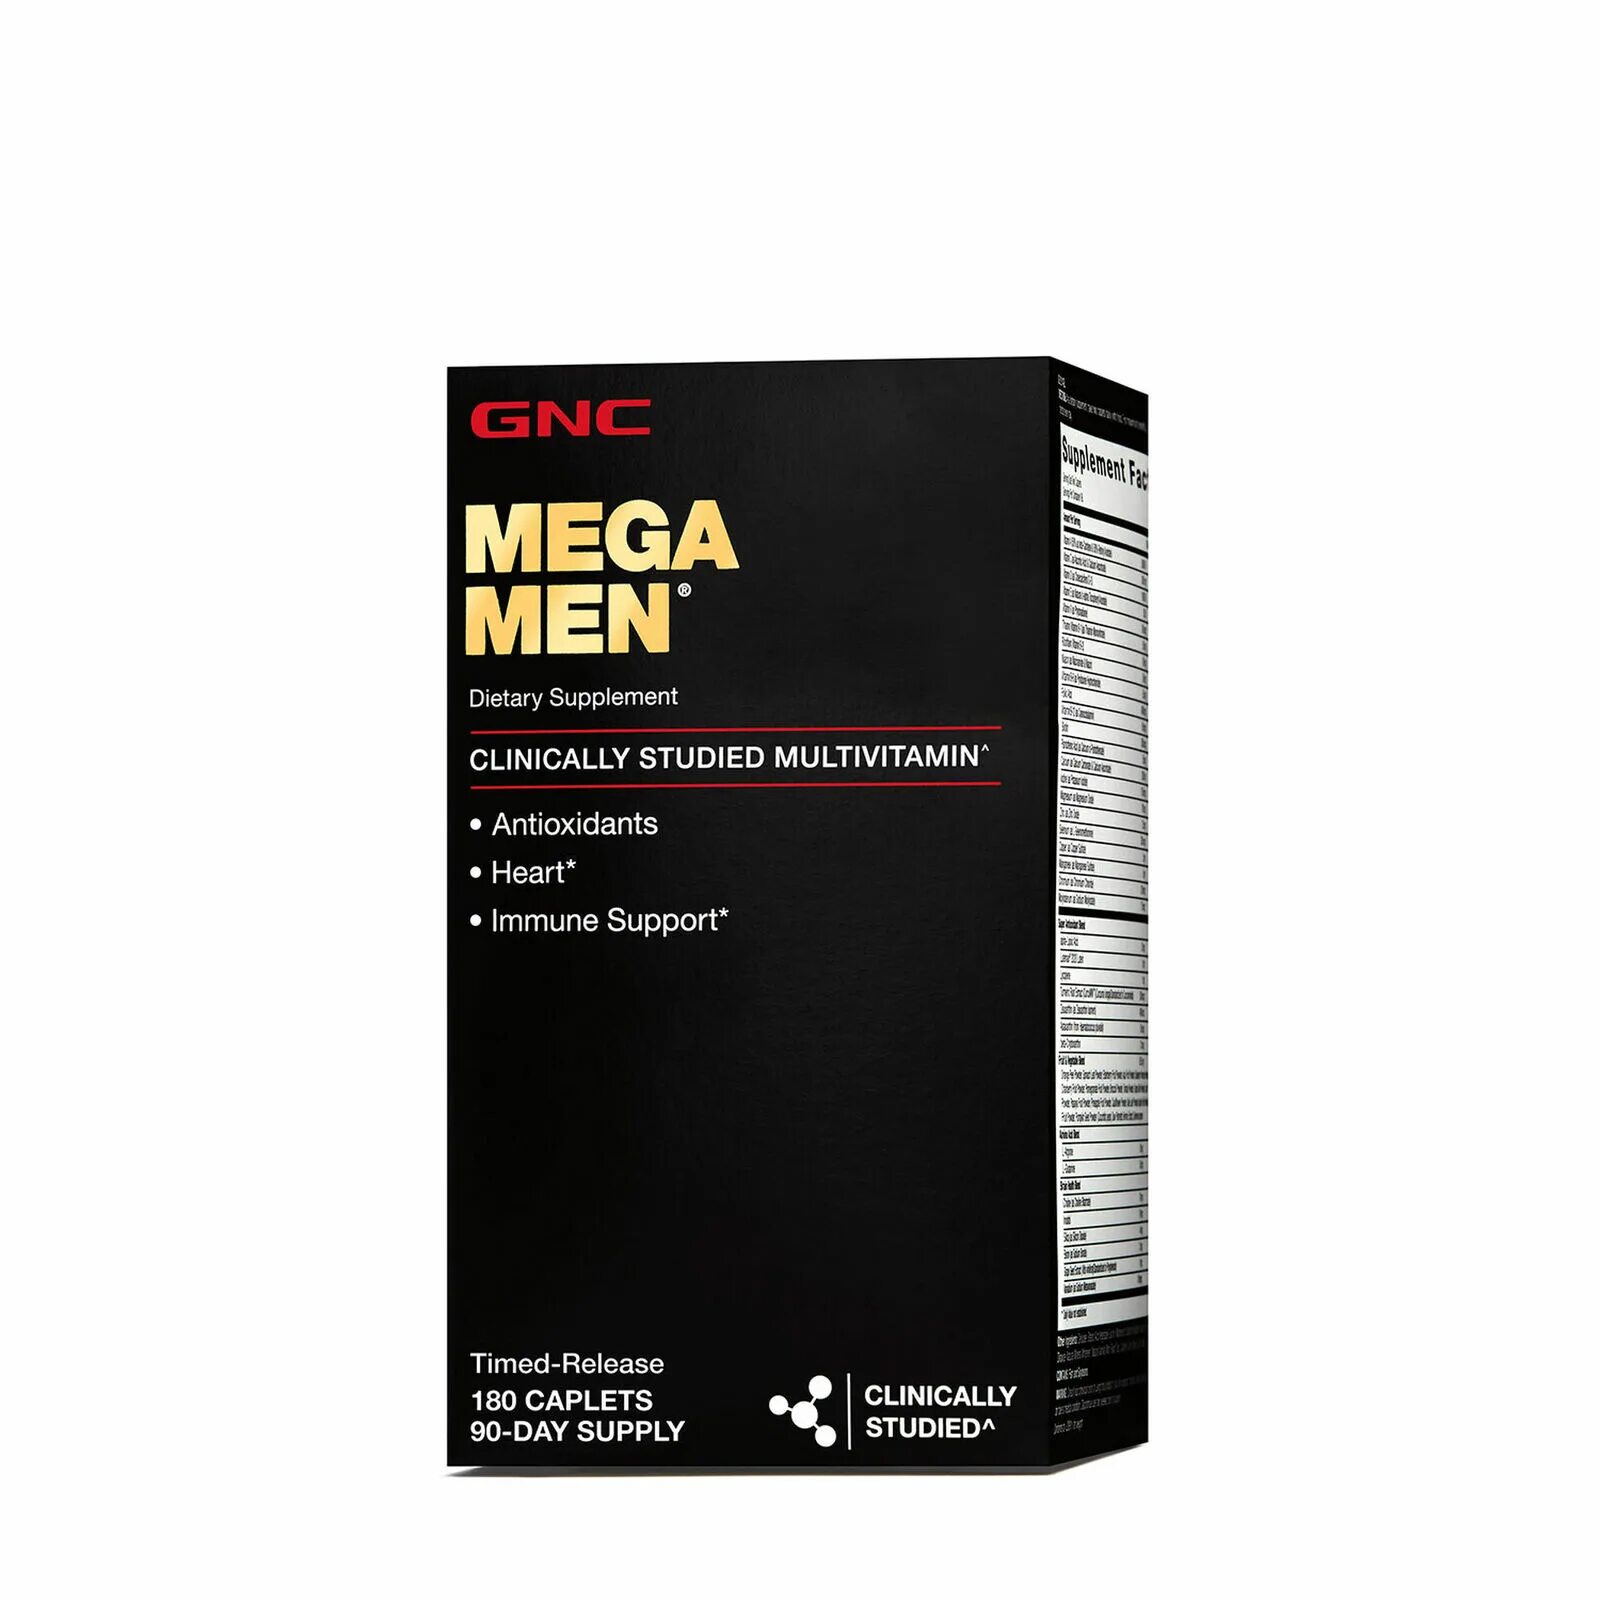 GNC Mega men 50 Plus. GNC Mega men 180. Mega men Sport GNC витамины. GNC, Mega men, клинически изученные мультивитамины для мужчин, 180 капсул. Витамины men sport